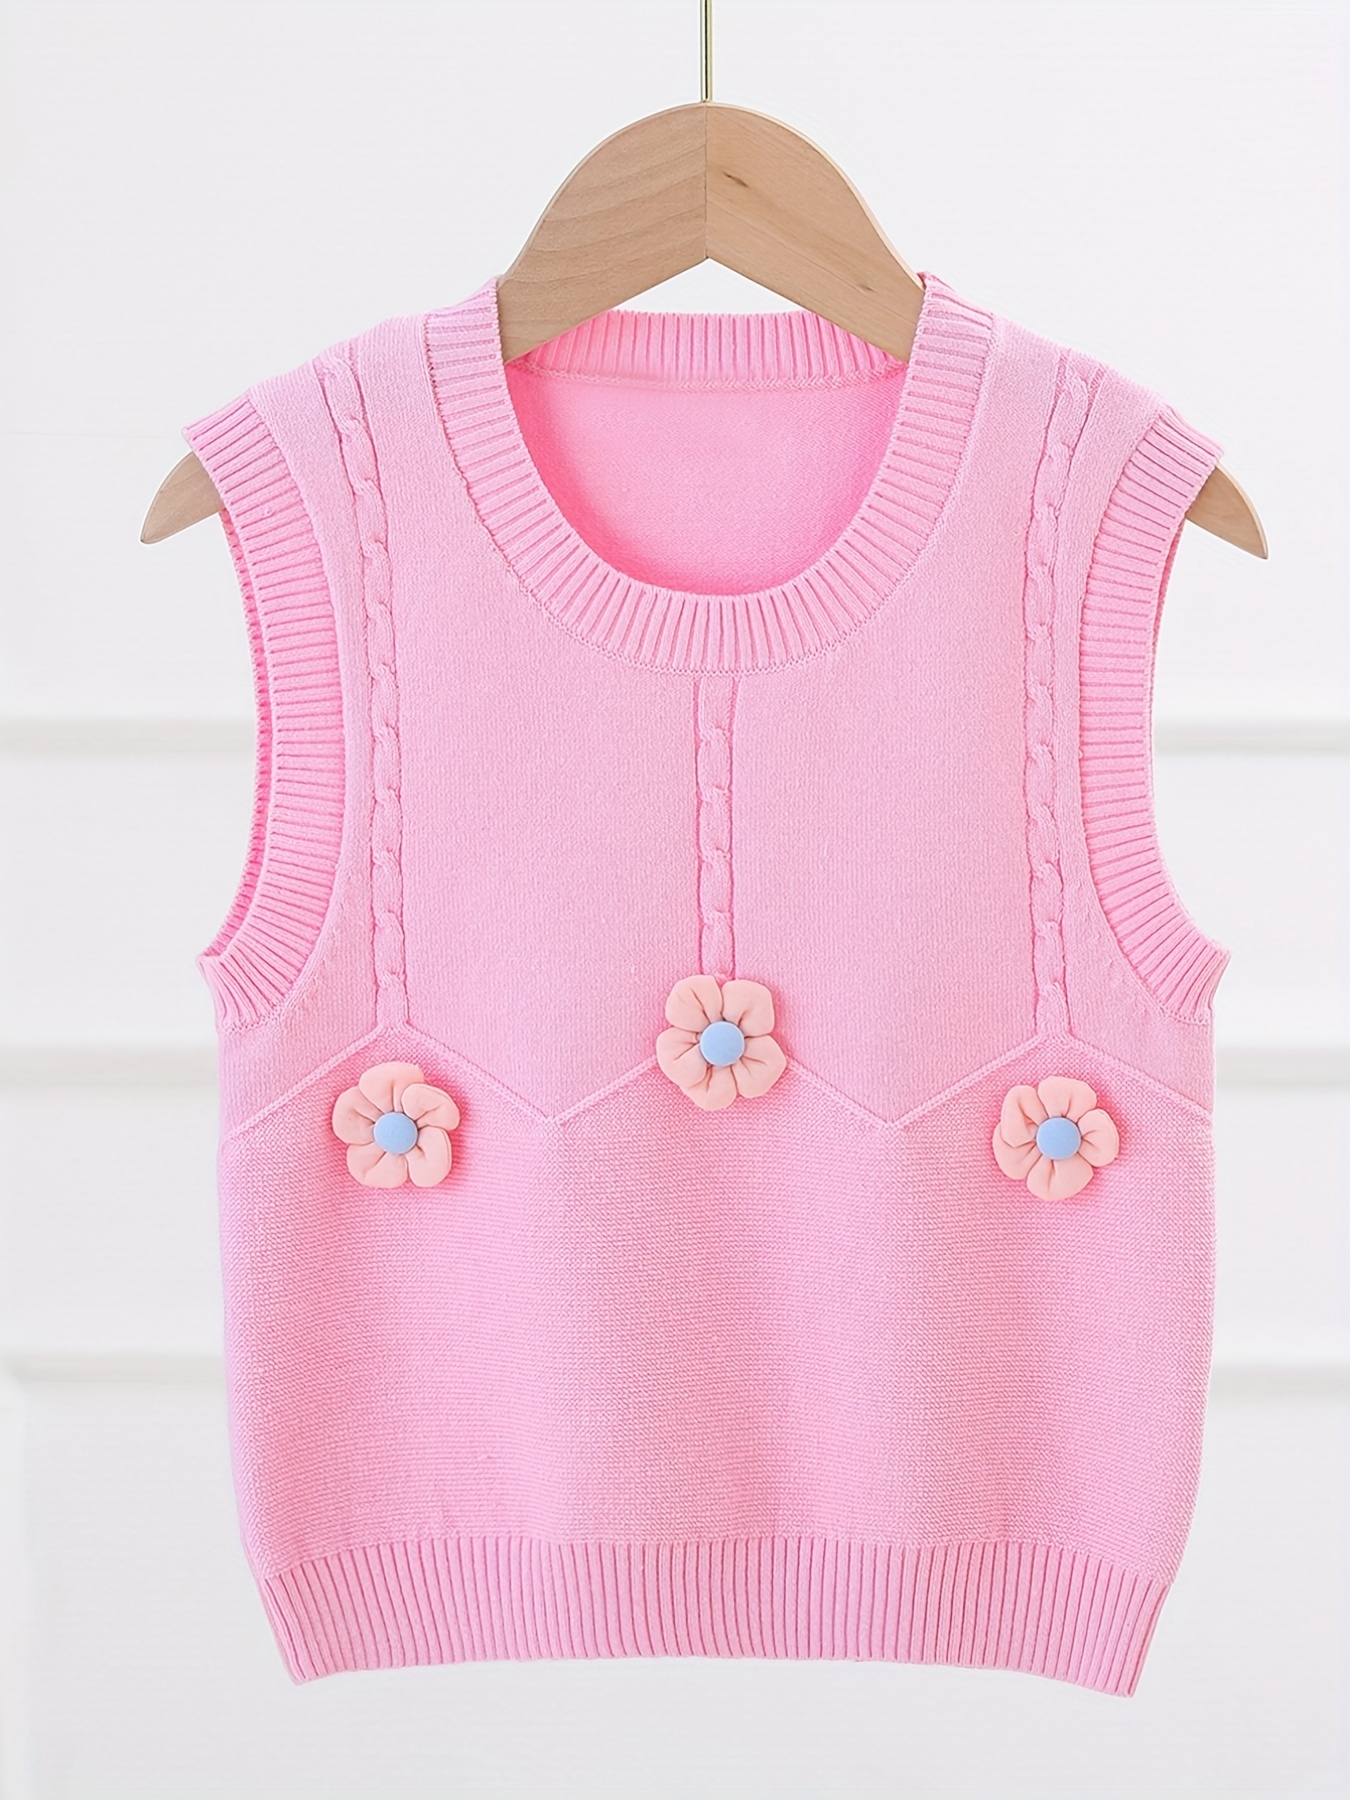 Chaleco de niña, chaleco de primavera de punto, chaleco rosa claro con  capucha, chaleco de algodón para niño. -  México